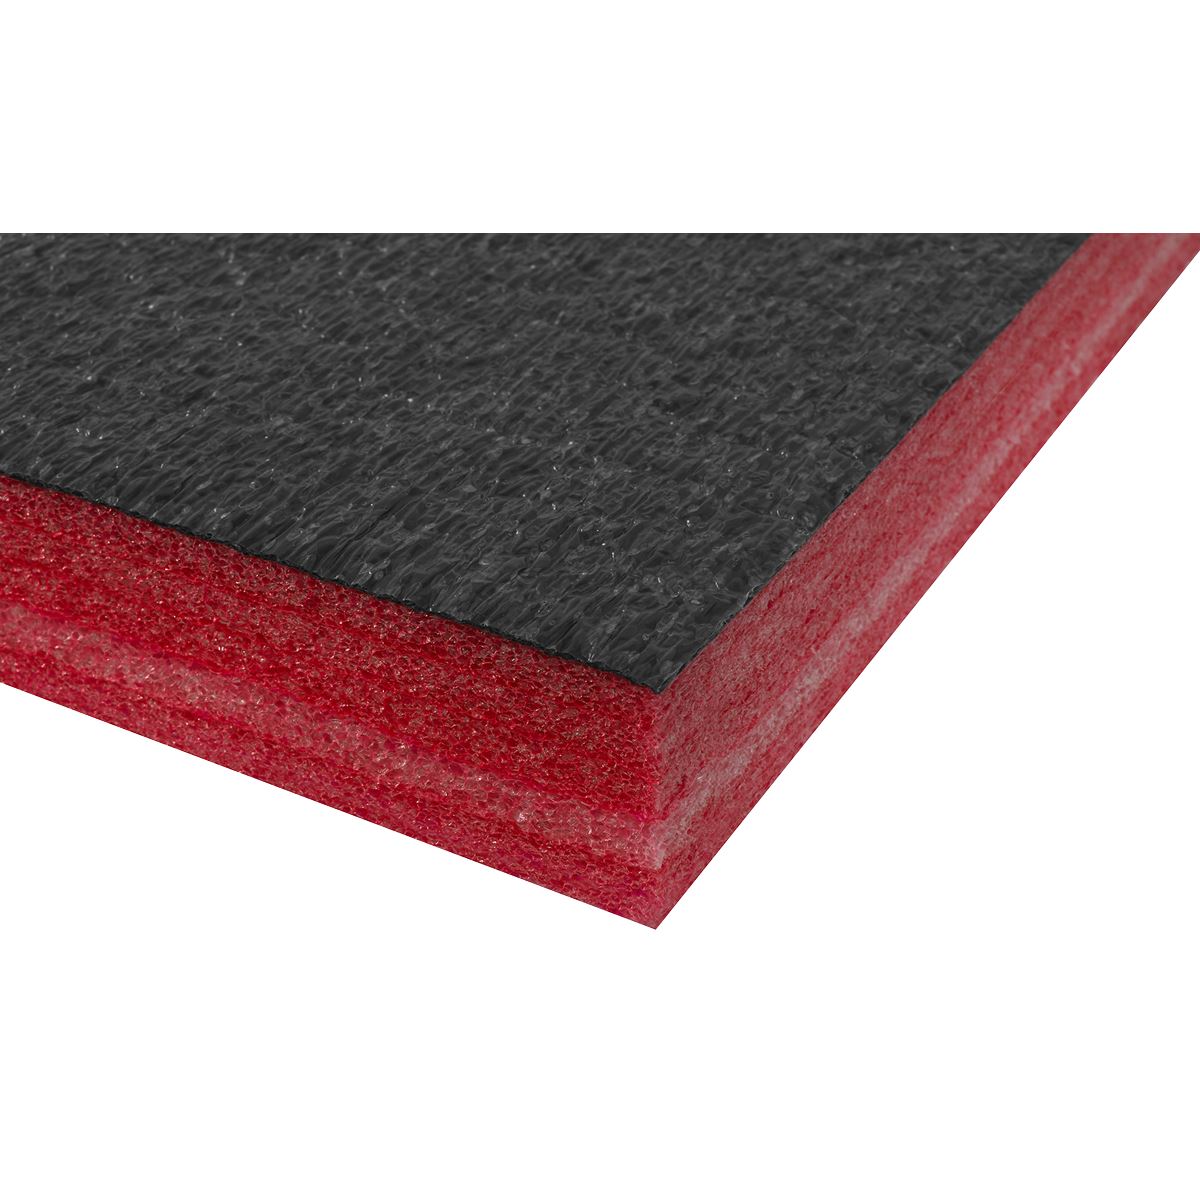 Sealey Easy Peel Shadow Foam Red/Black 1200 x 550 x 30mm Tool Box